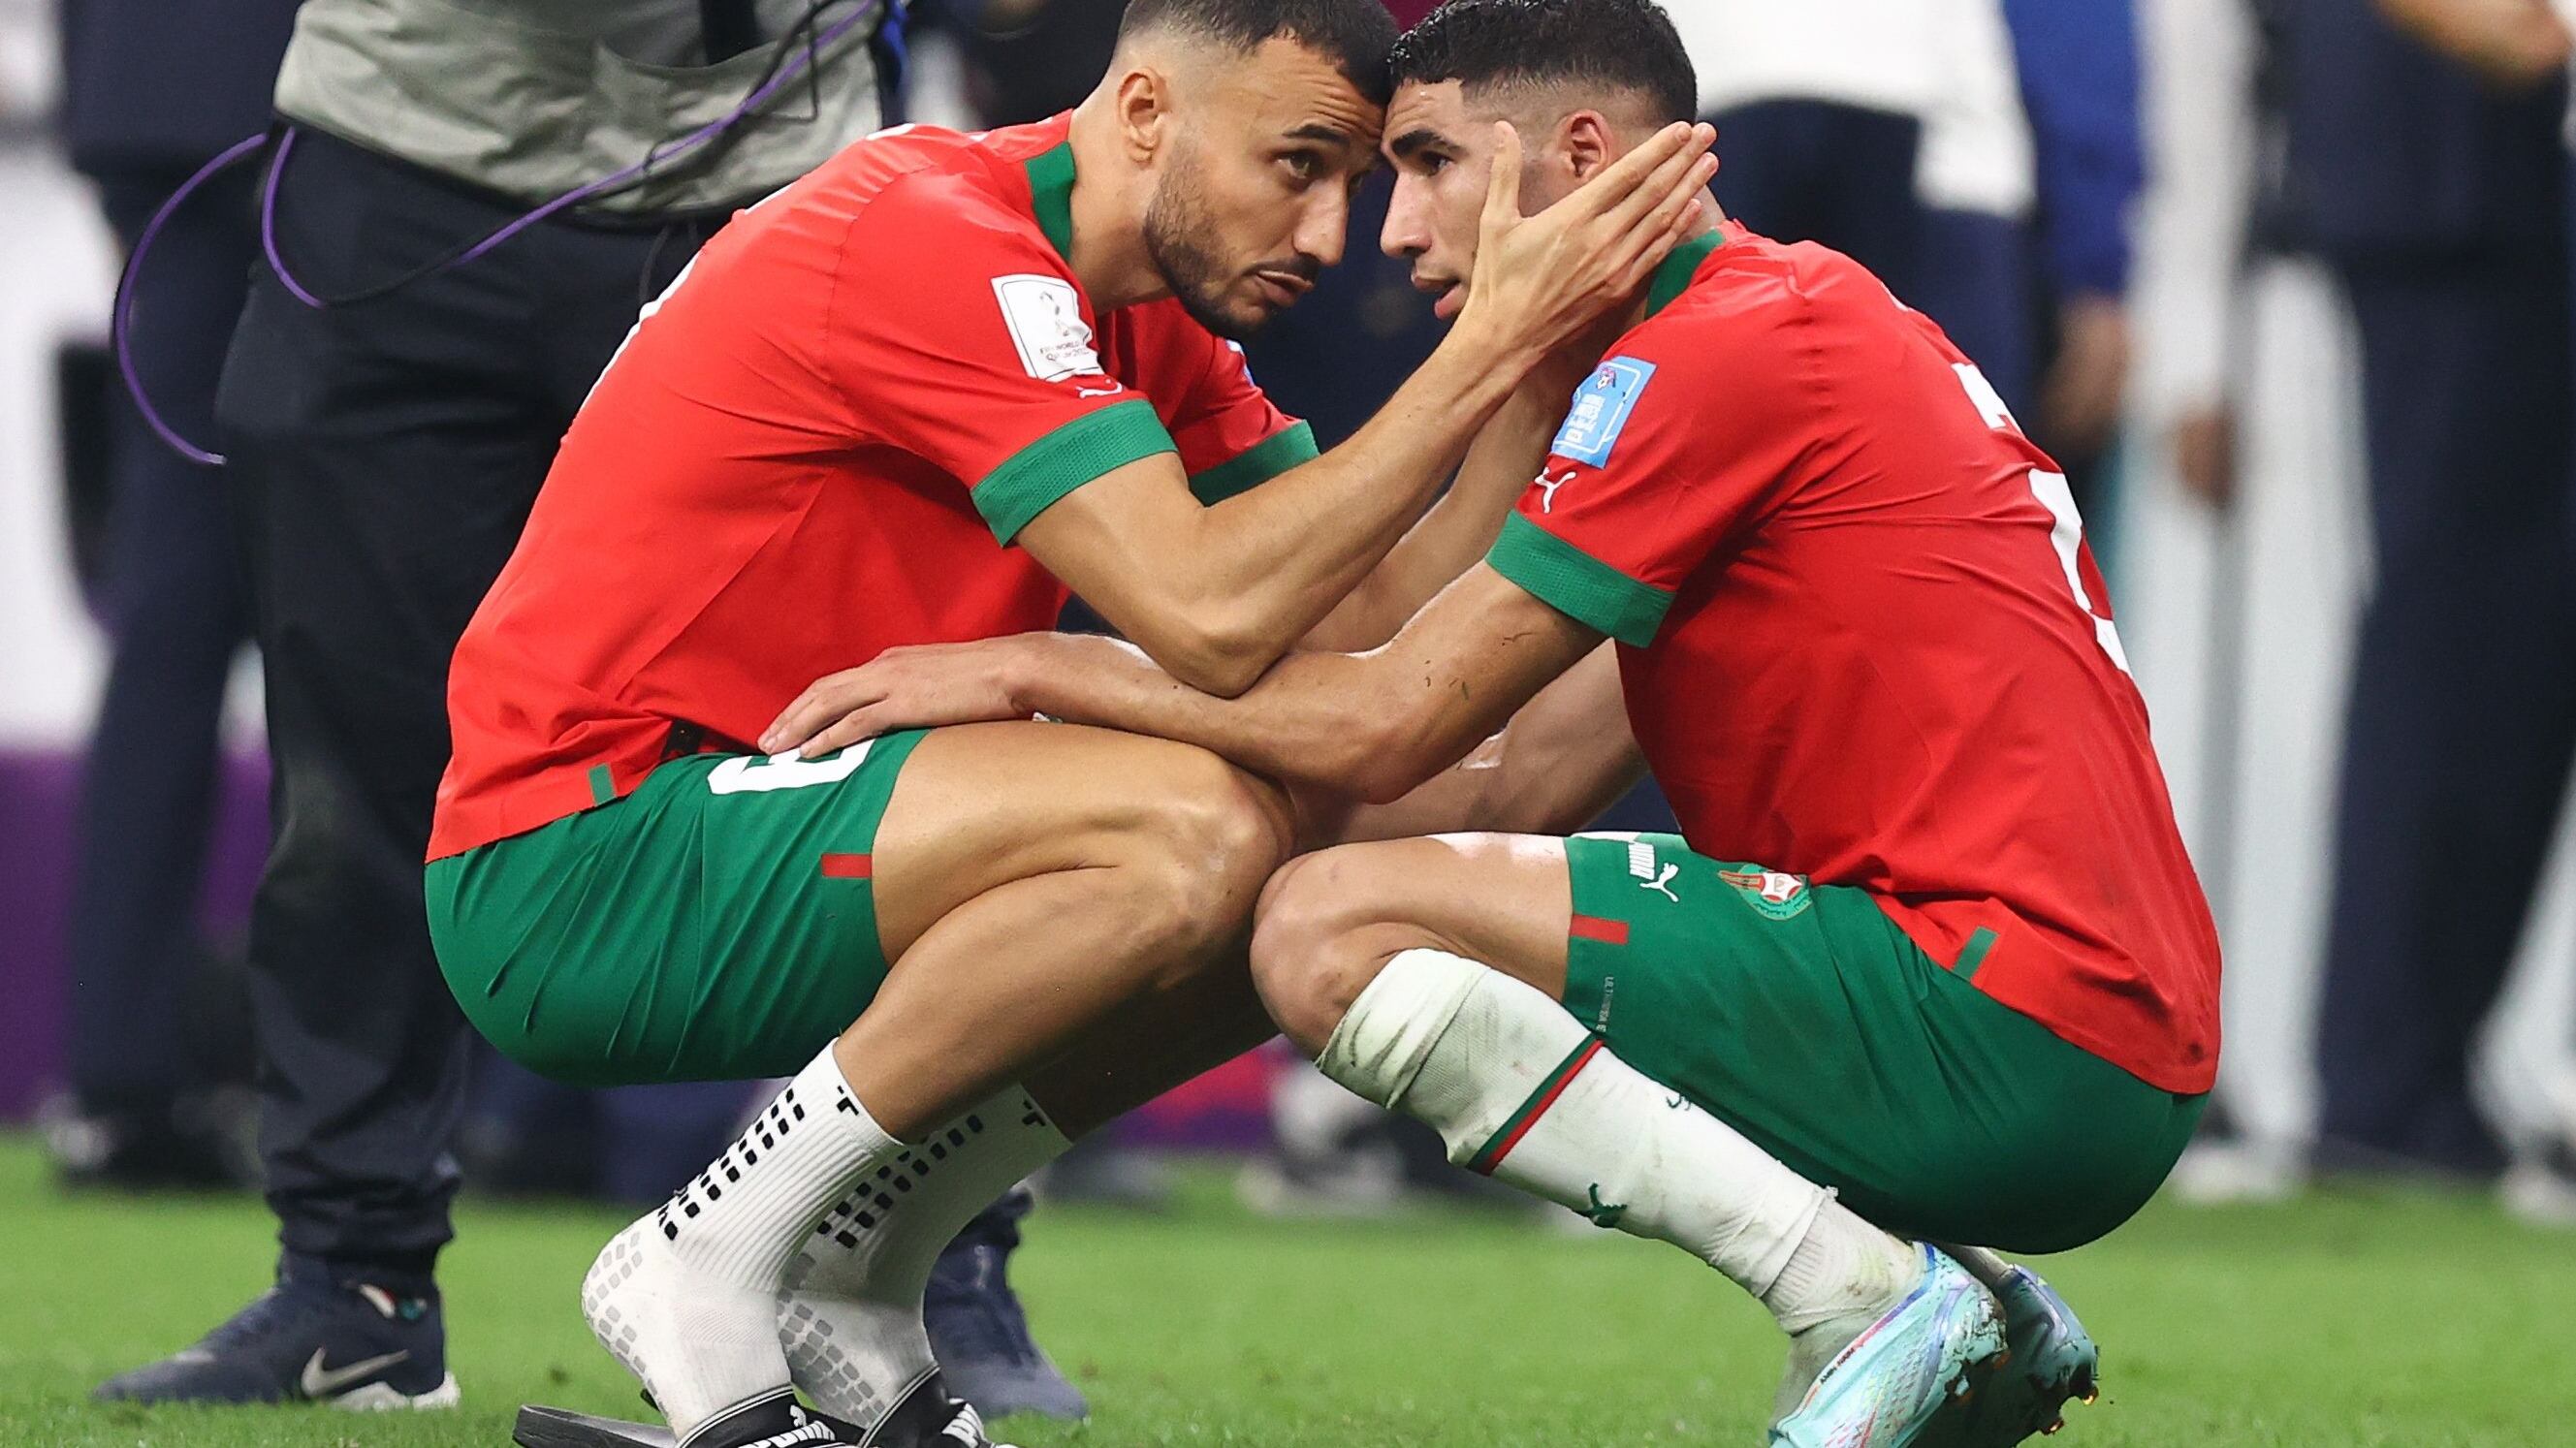 Croacia vs Marruecos partido por el tercer lugar Mundial Qatar 2022, Cuándo juegan, alineaciones y dónde ver